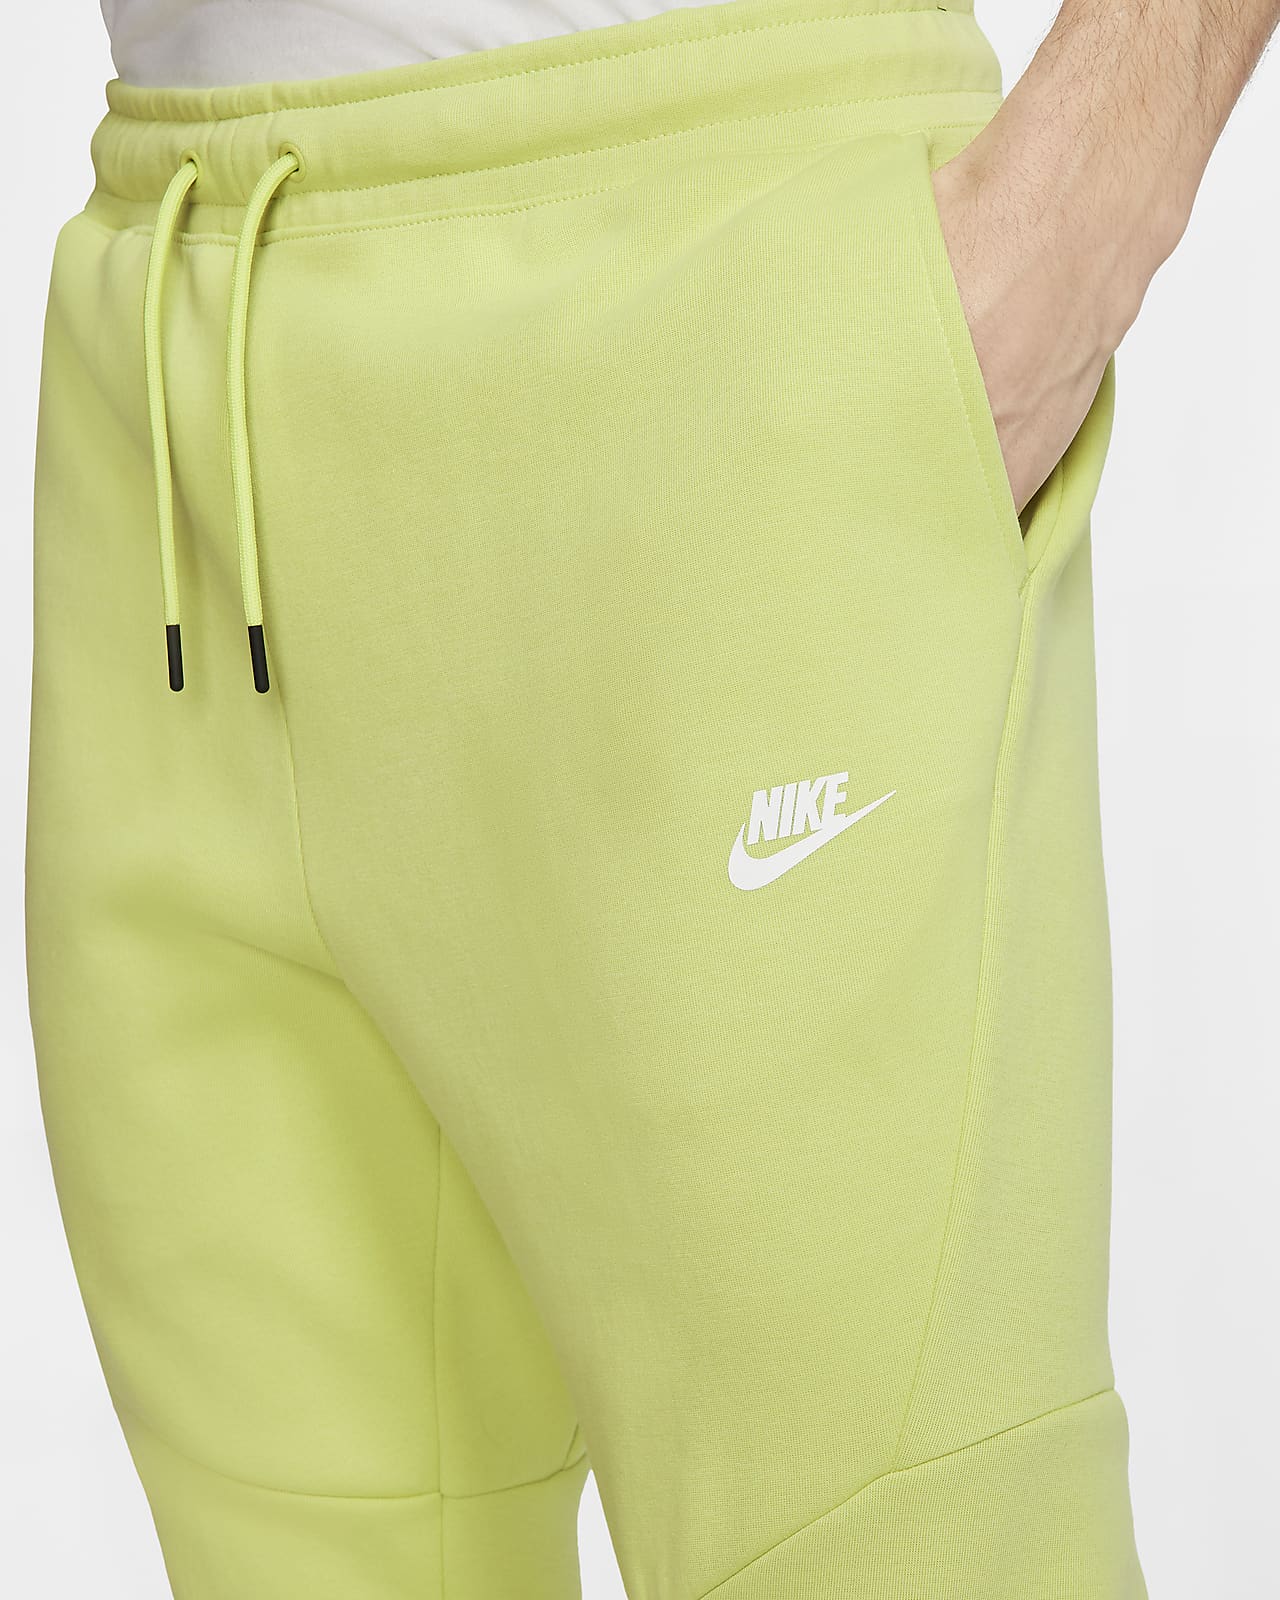 nike tech fleece shorts yellow